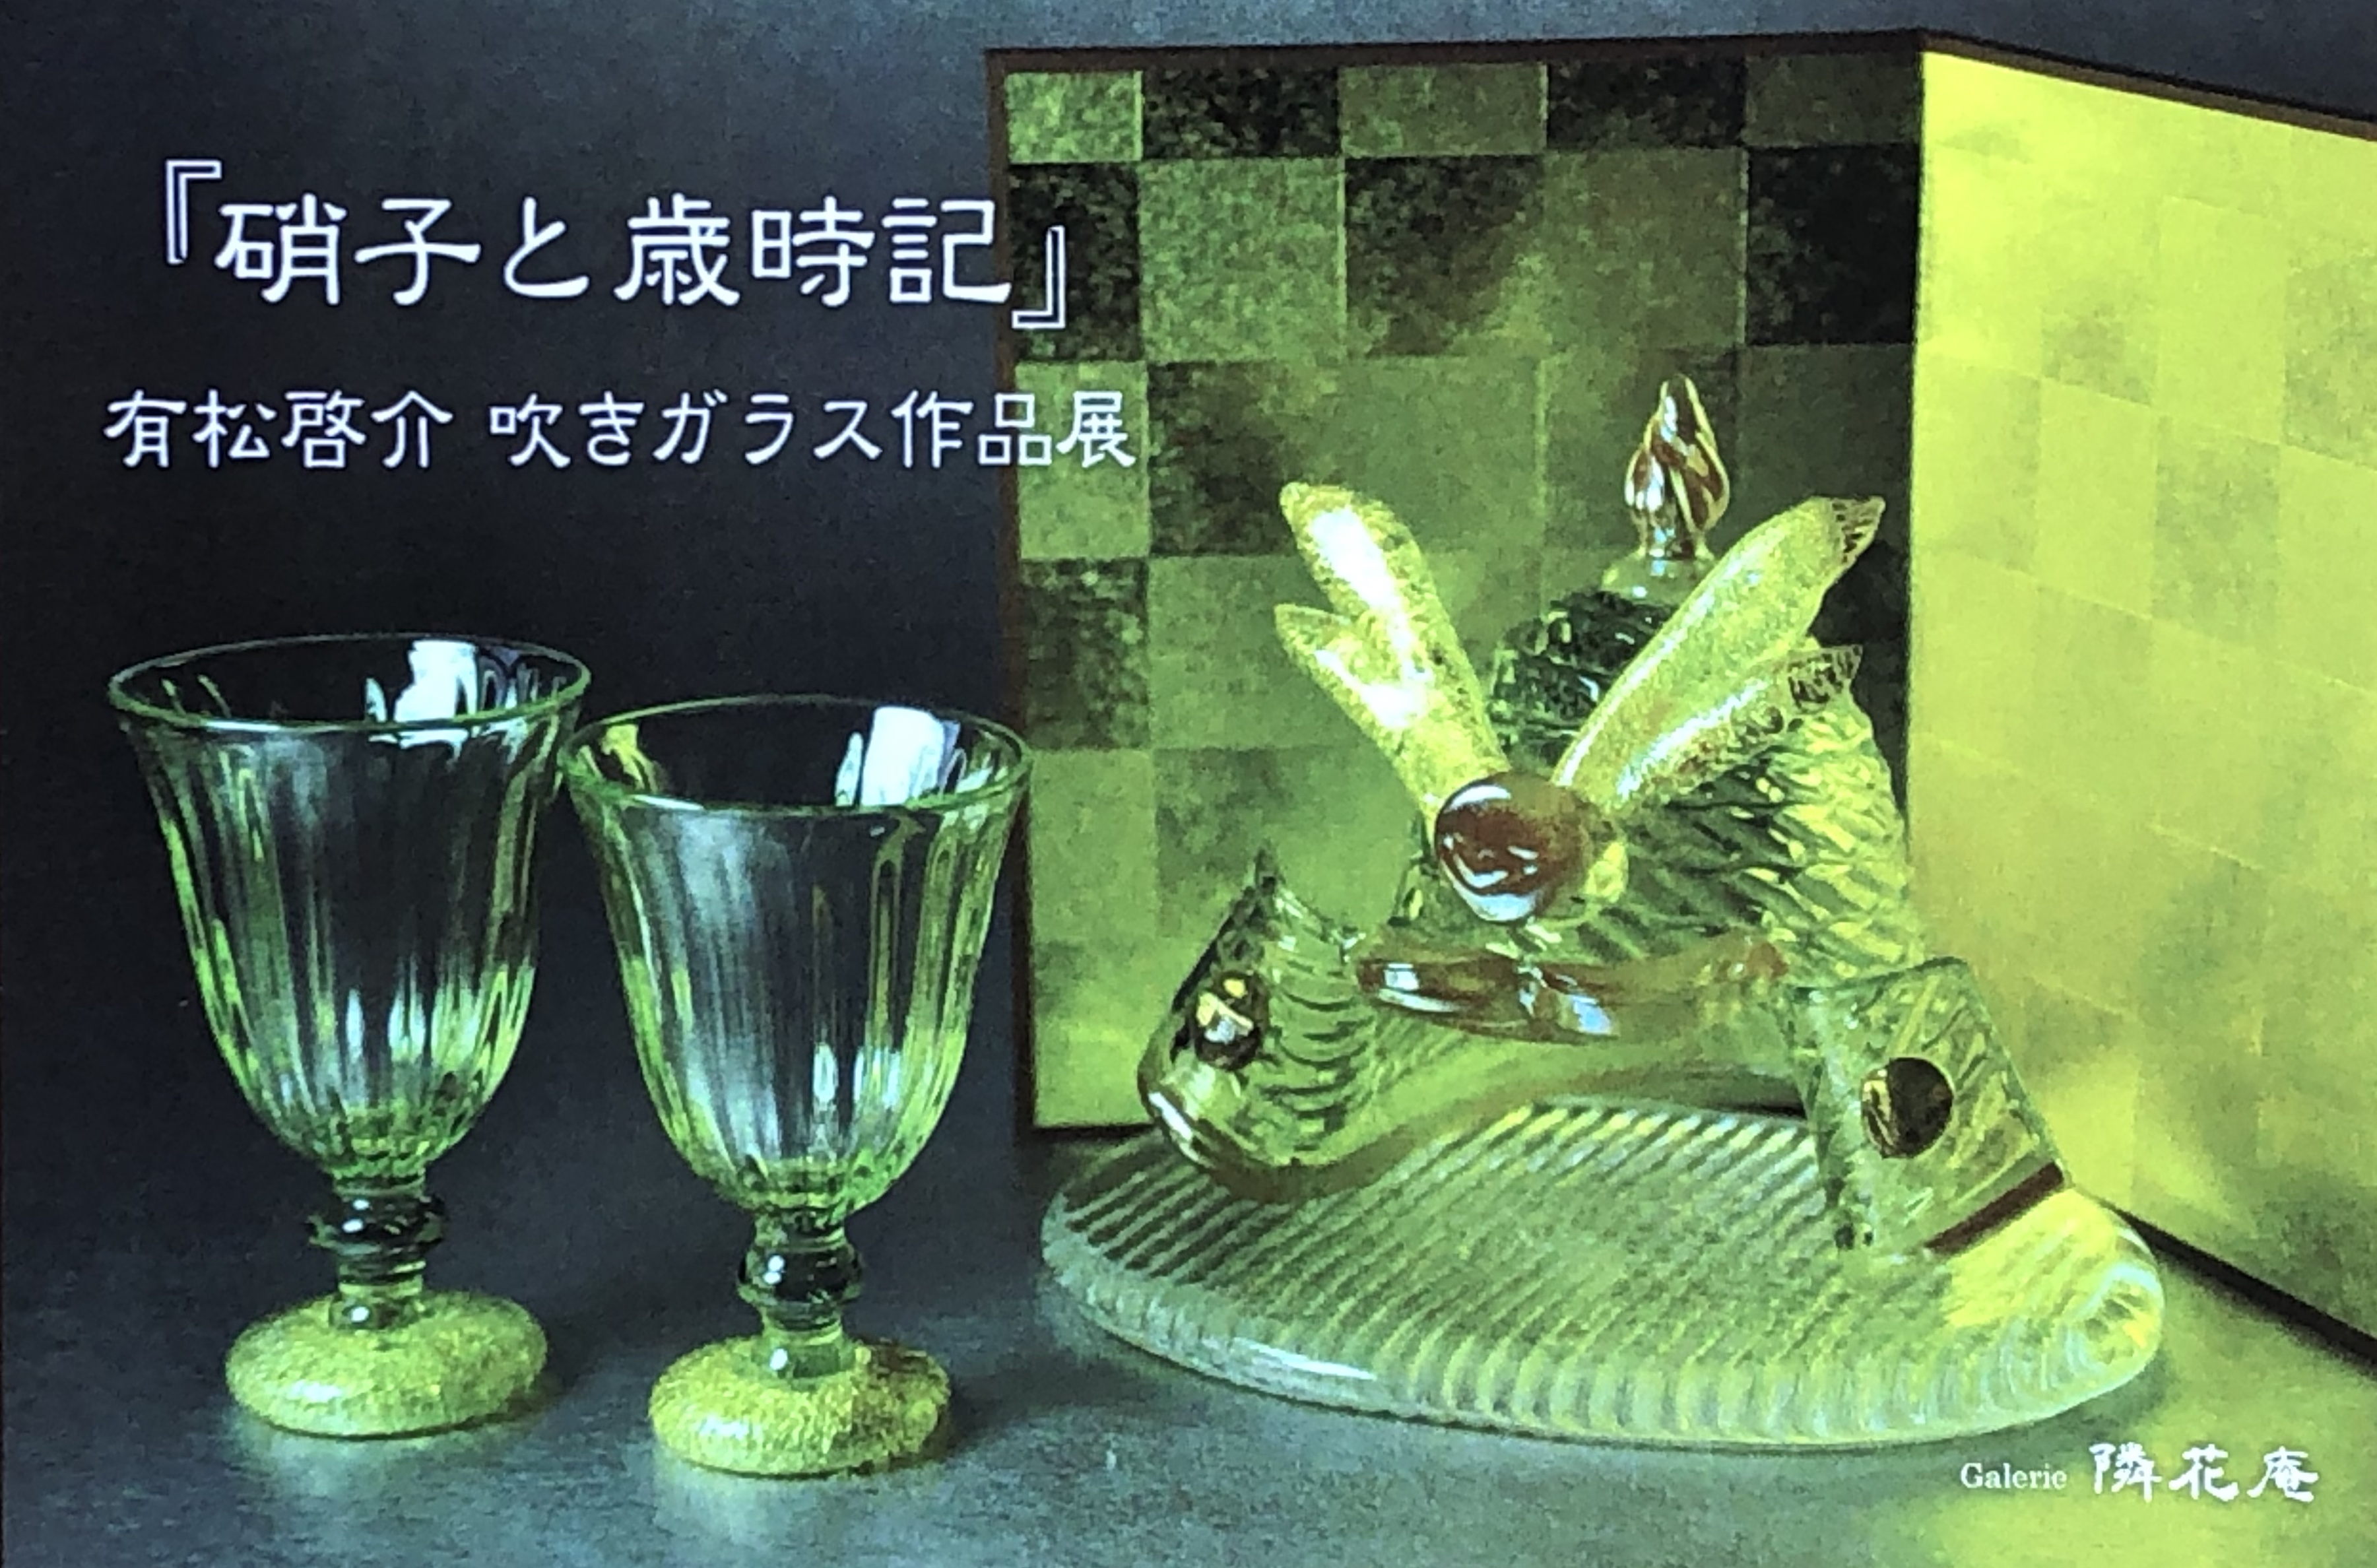 『硝子と歳時記』有松啓介　吹きガラス作品展